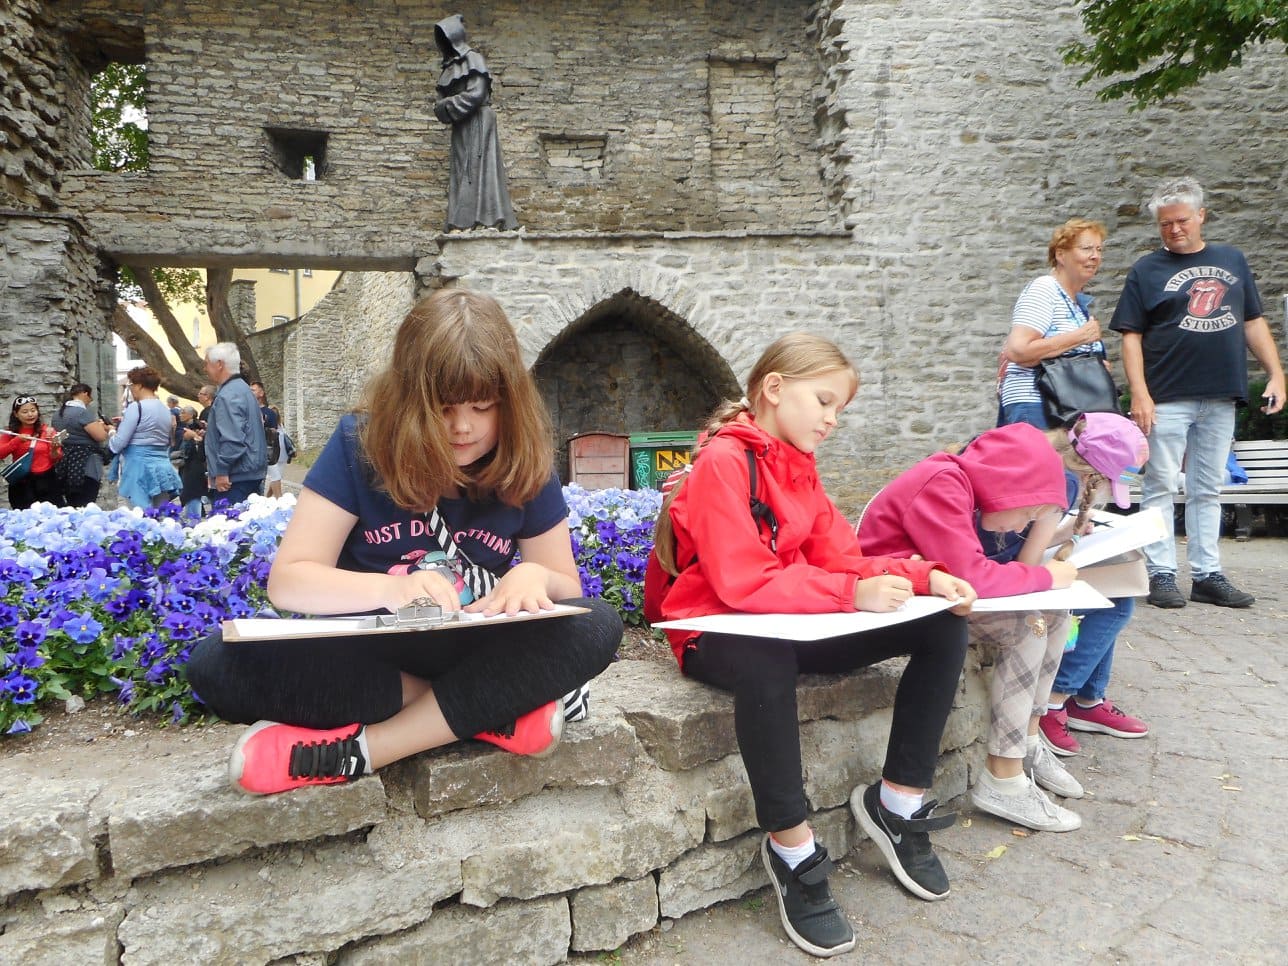 Fotol on kujutatud Neitsitorni hoovis müüril istuvaid ja otse natuurist joonistavaid õpilasi joonistavad müüril istuvad